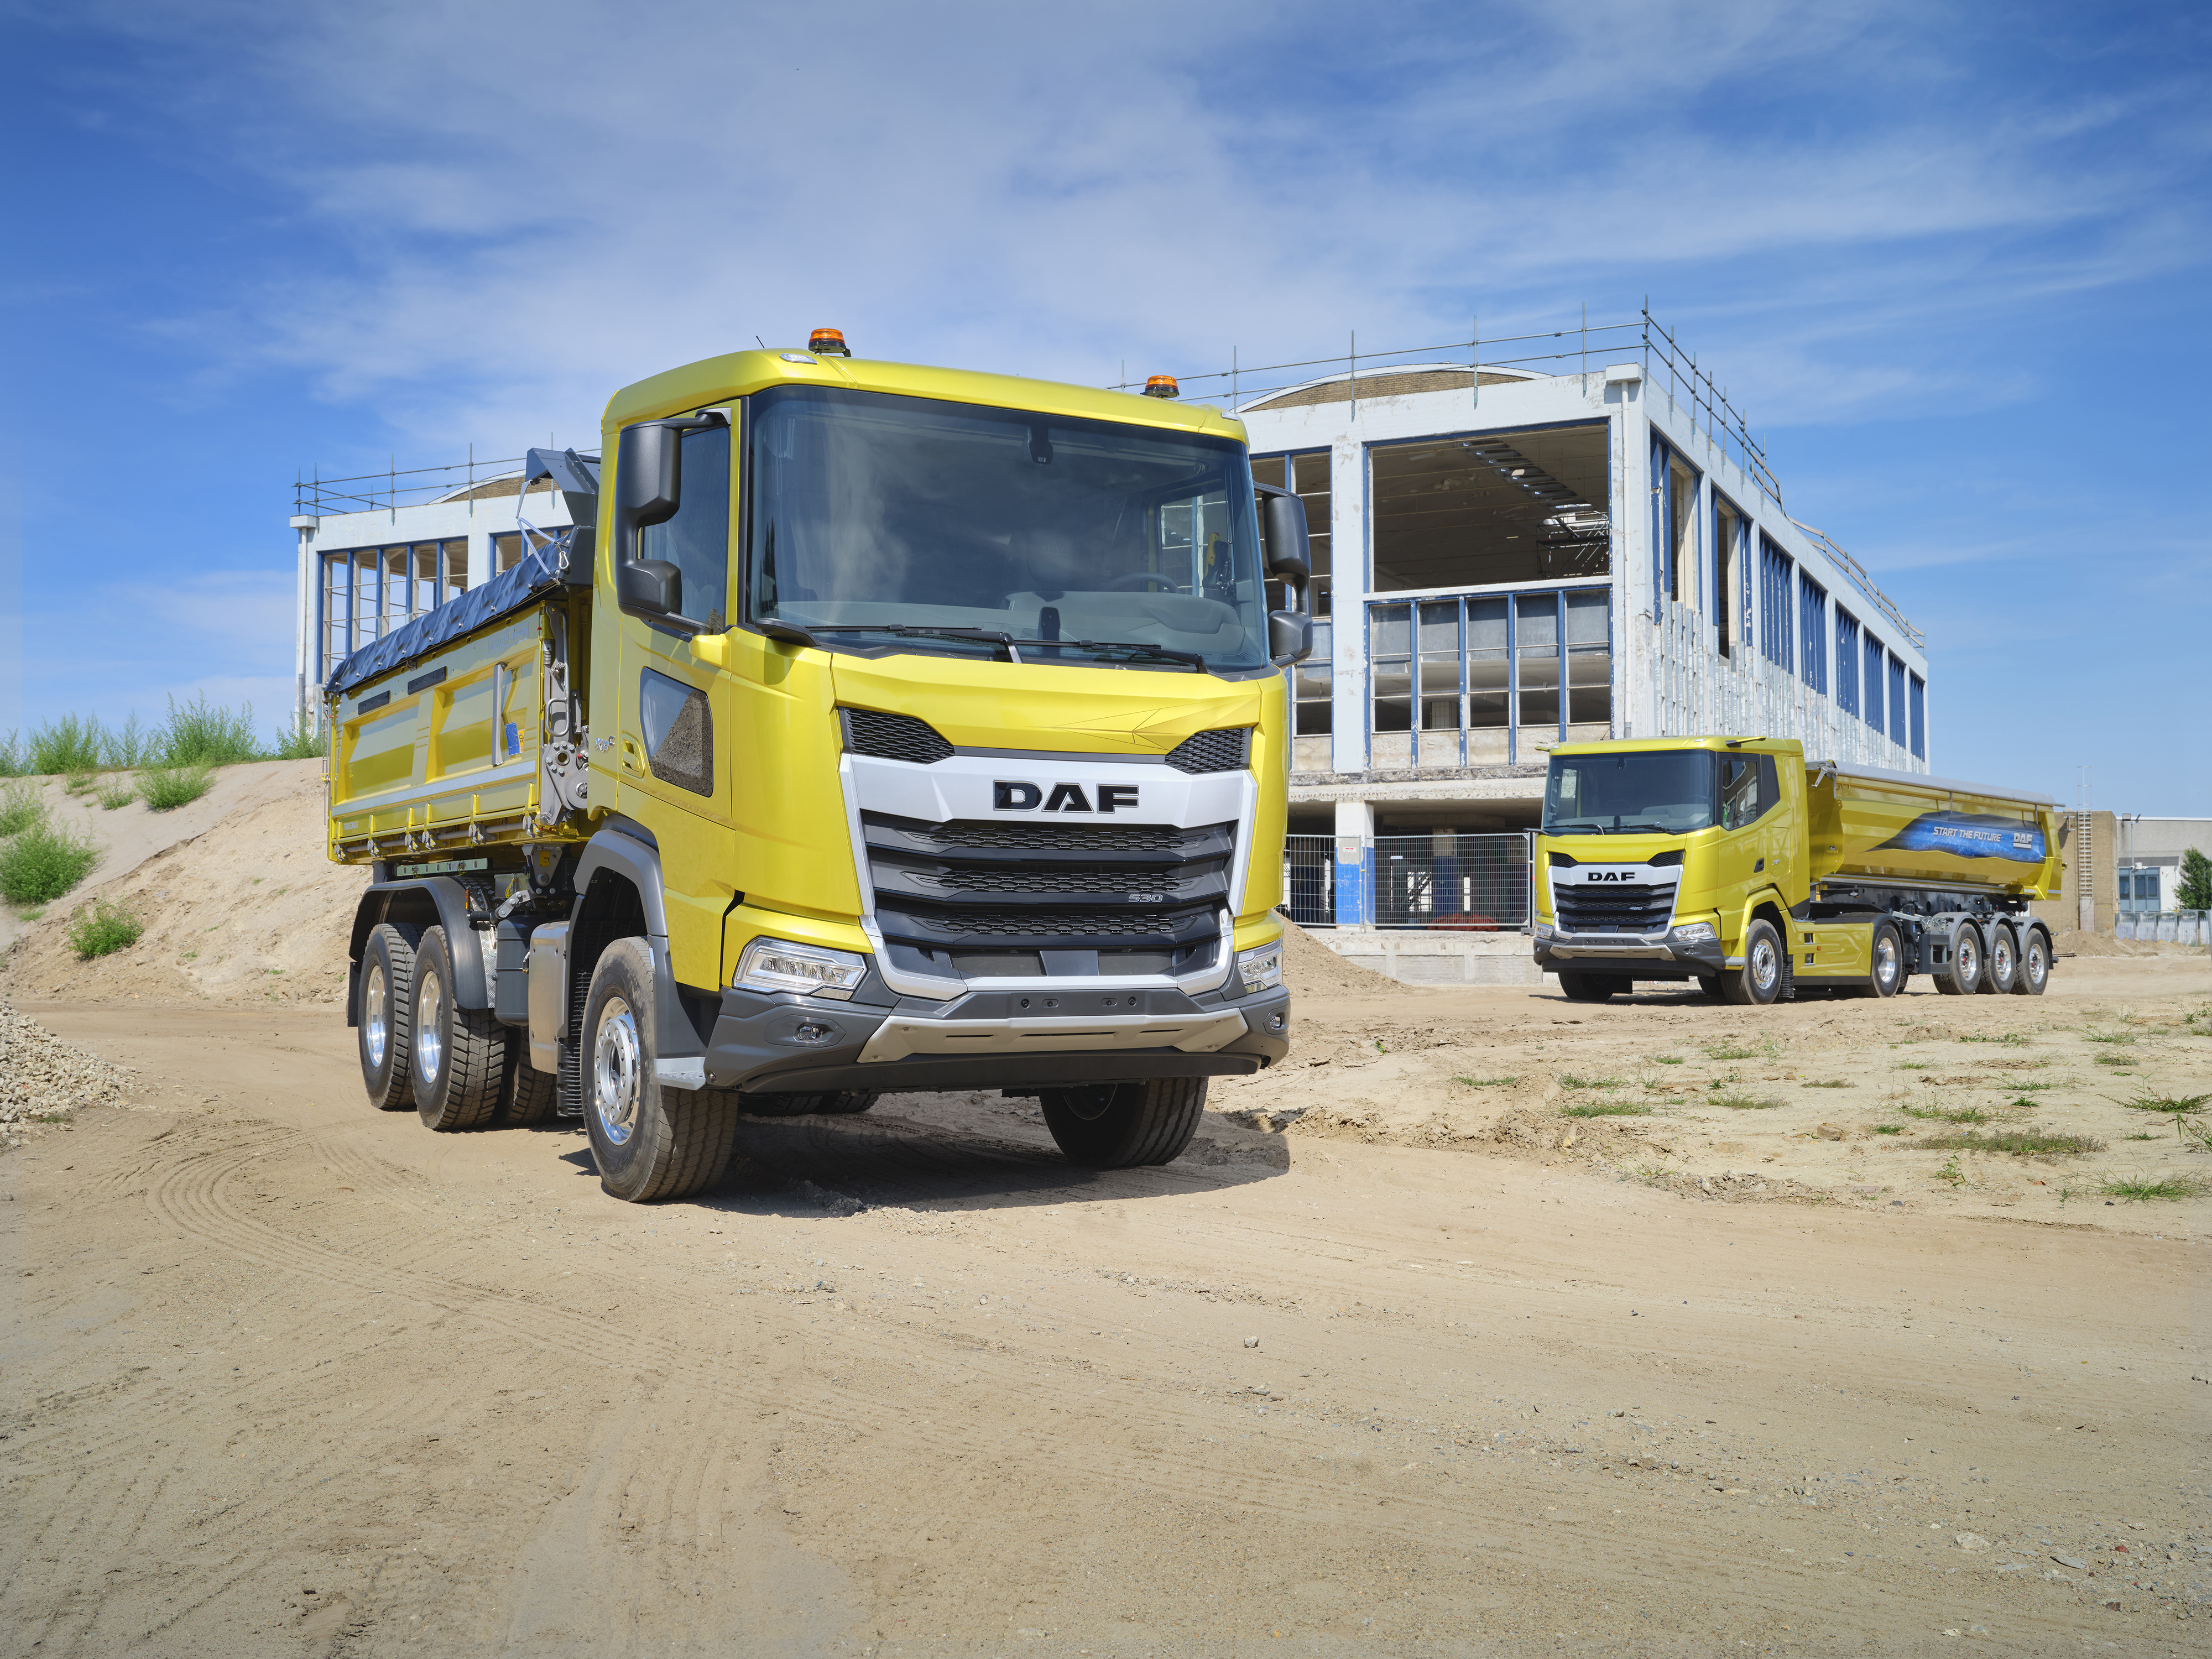 DAF-Serie von Lkw der neuen Generation - Baugewerbe